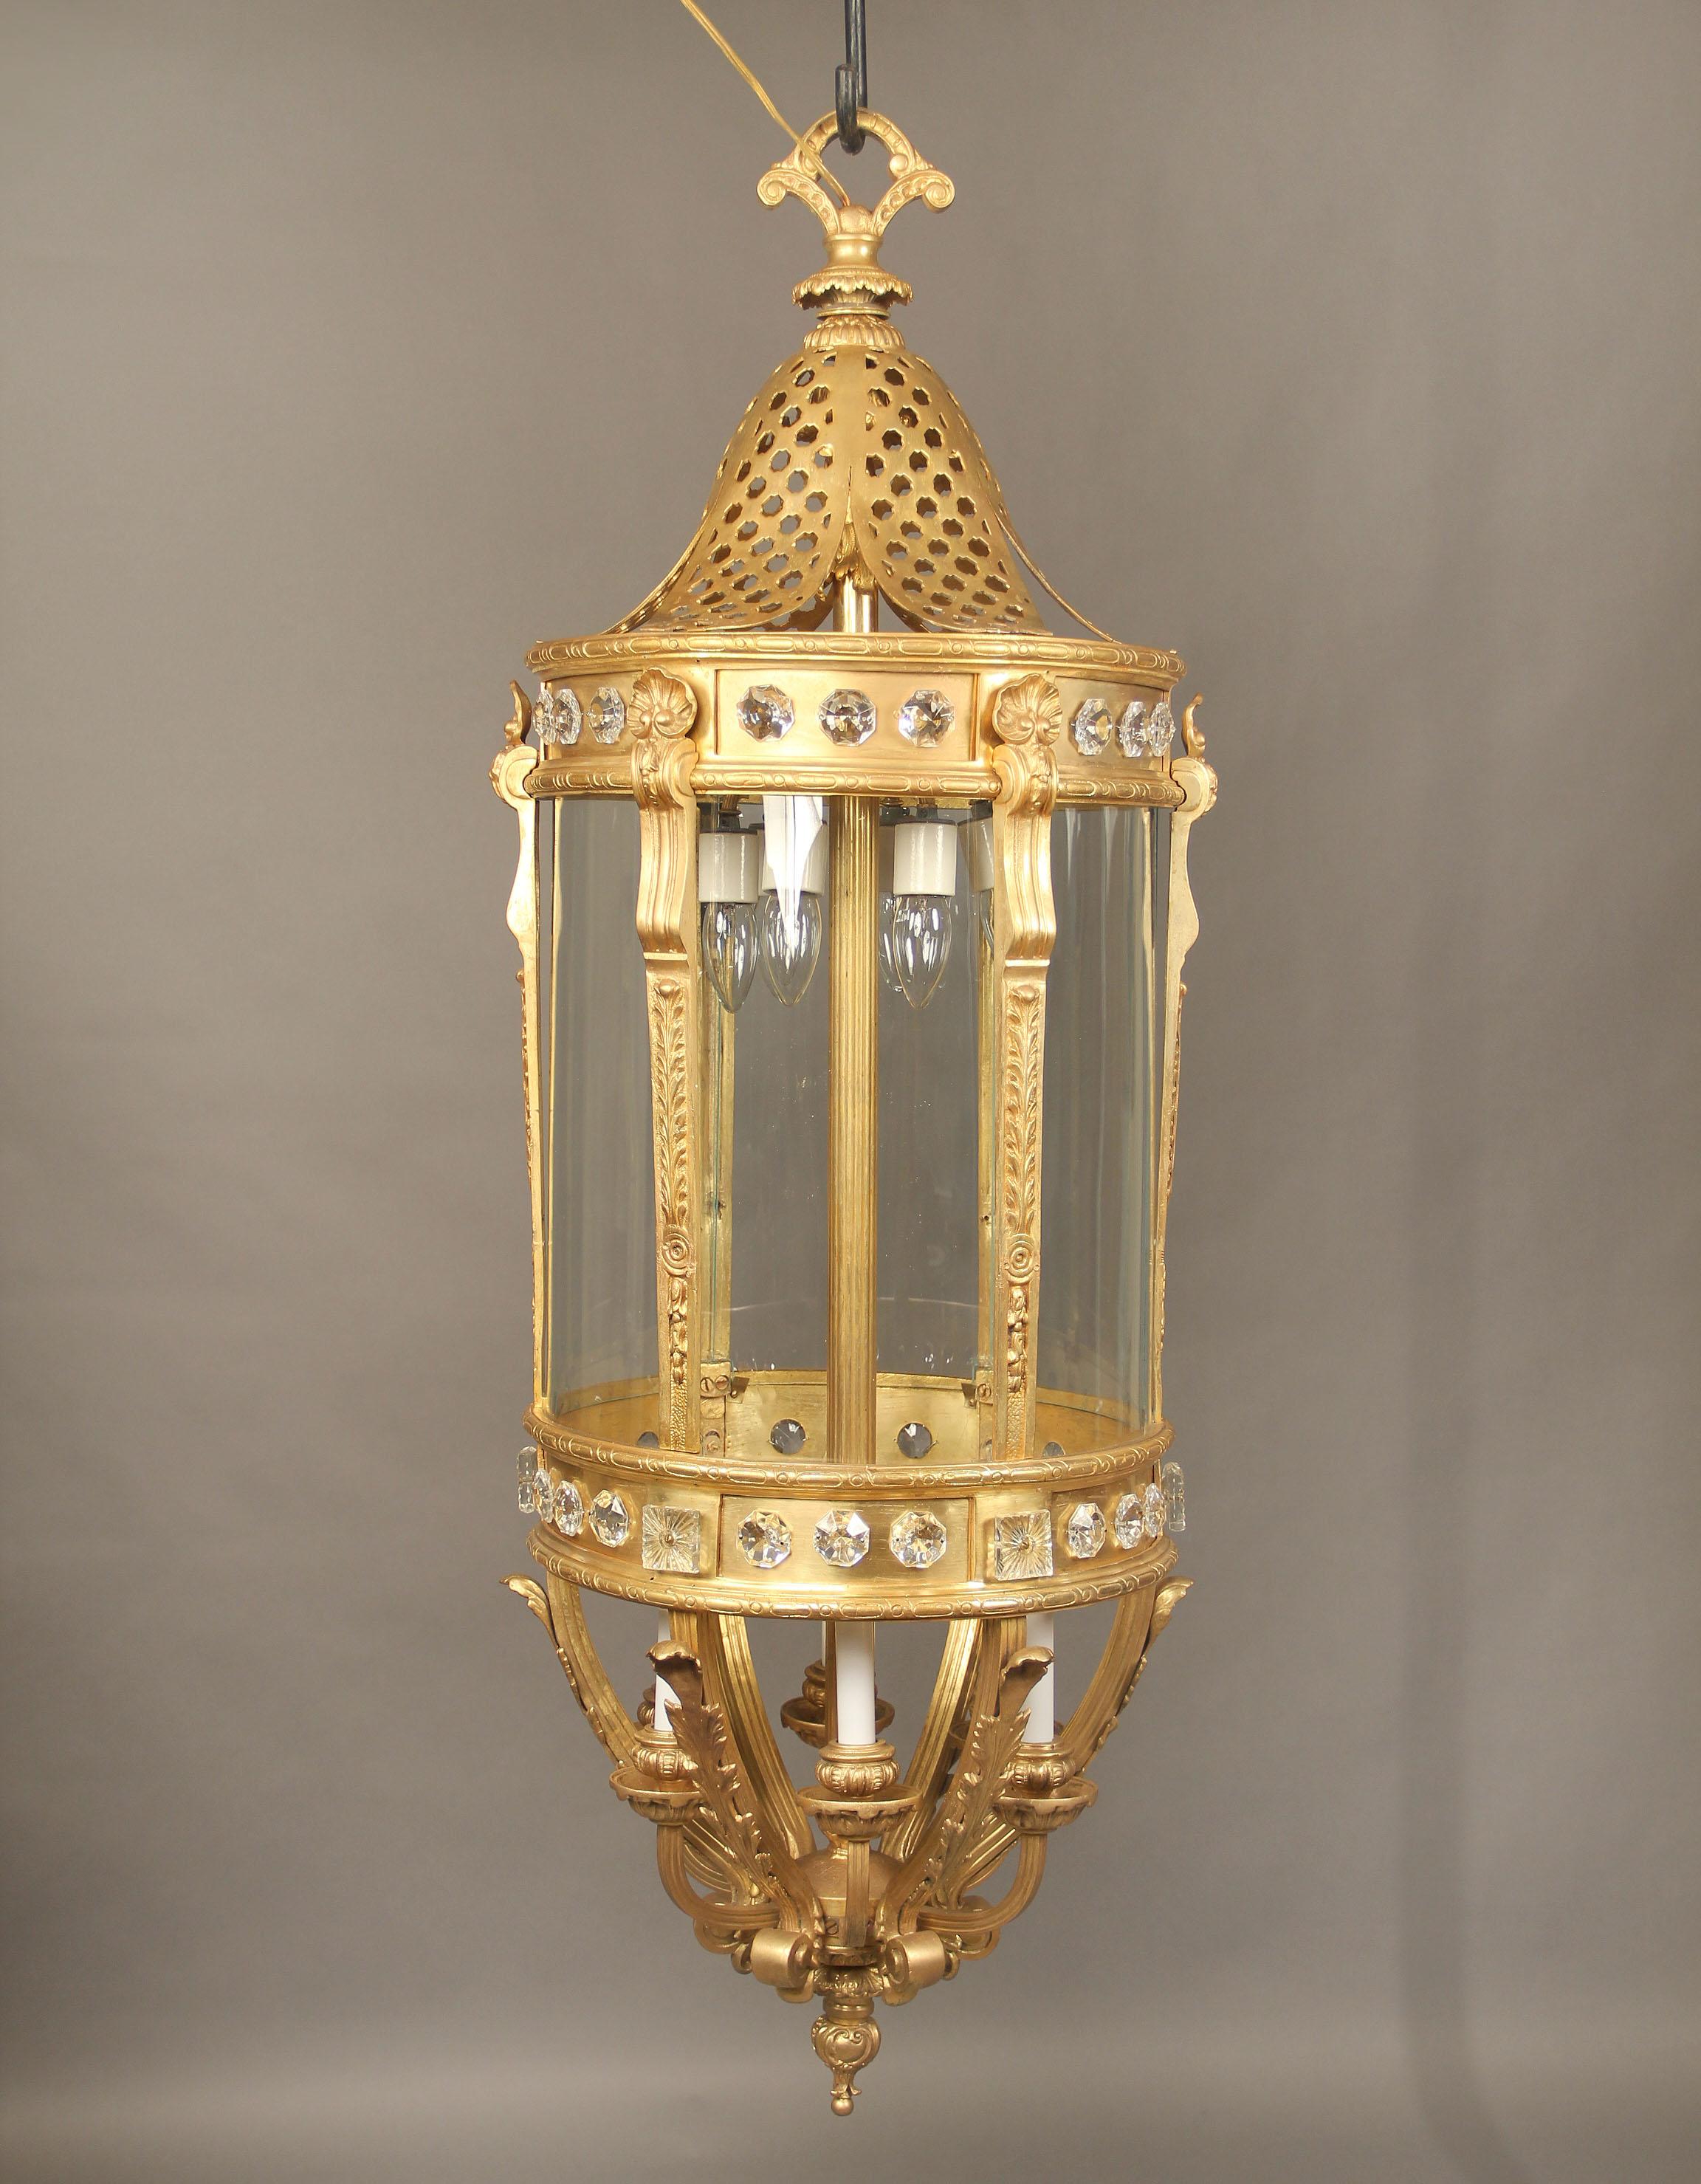 Une monumentale lanterne à douze lumières en bronze doré et cristal de la fin du XIXe siècle.

Forme longue et ovale avec des cristaux autour du corps, six lumières intérieures inférieures et six supérieures.